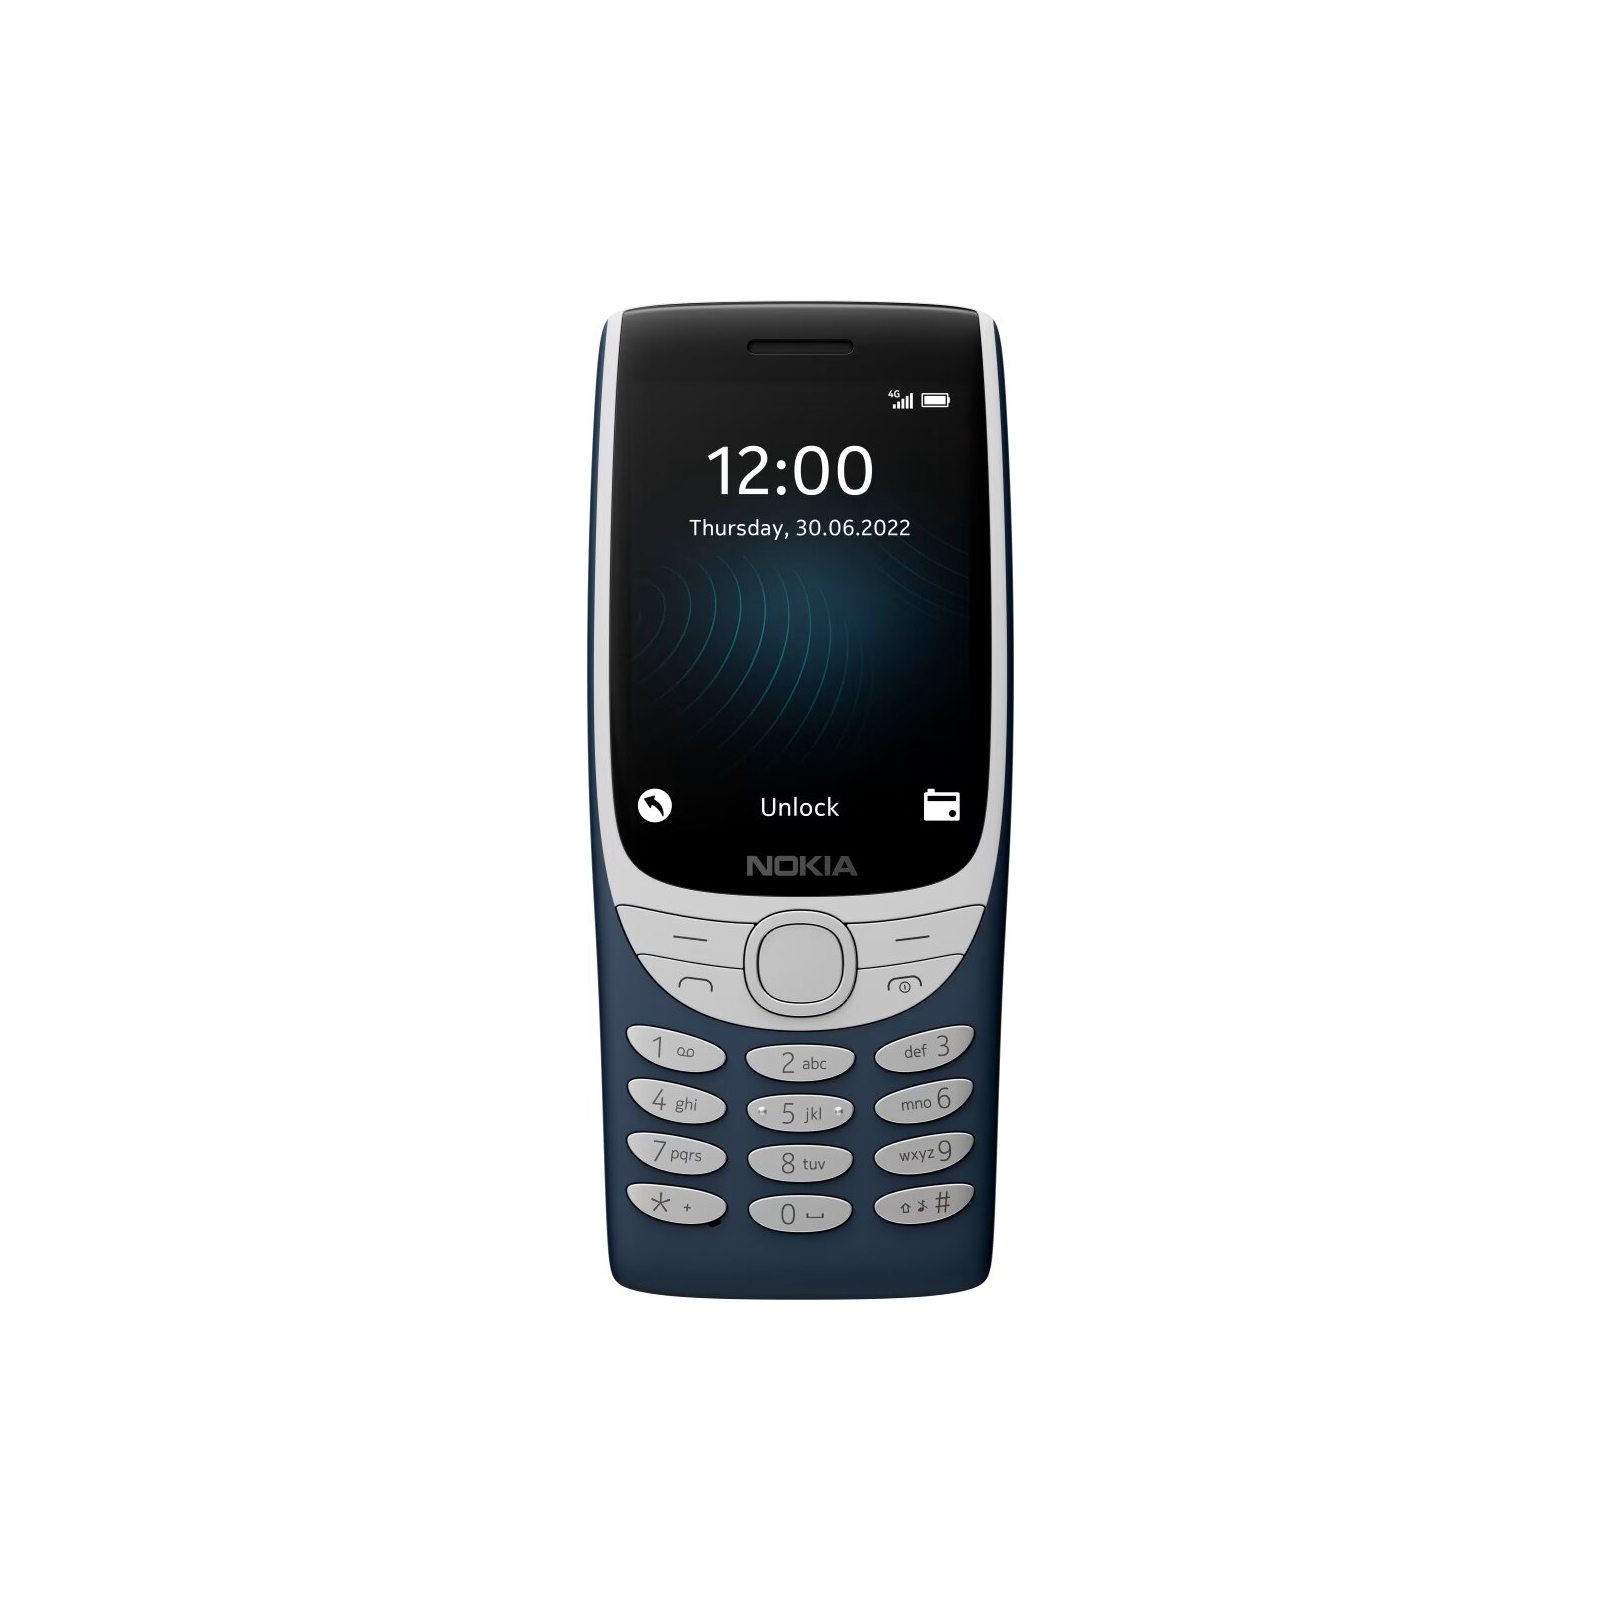 Мобильный телефон Nokia 8210 DS 4G Red